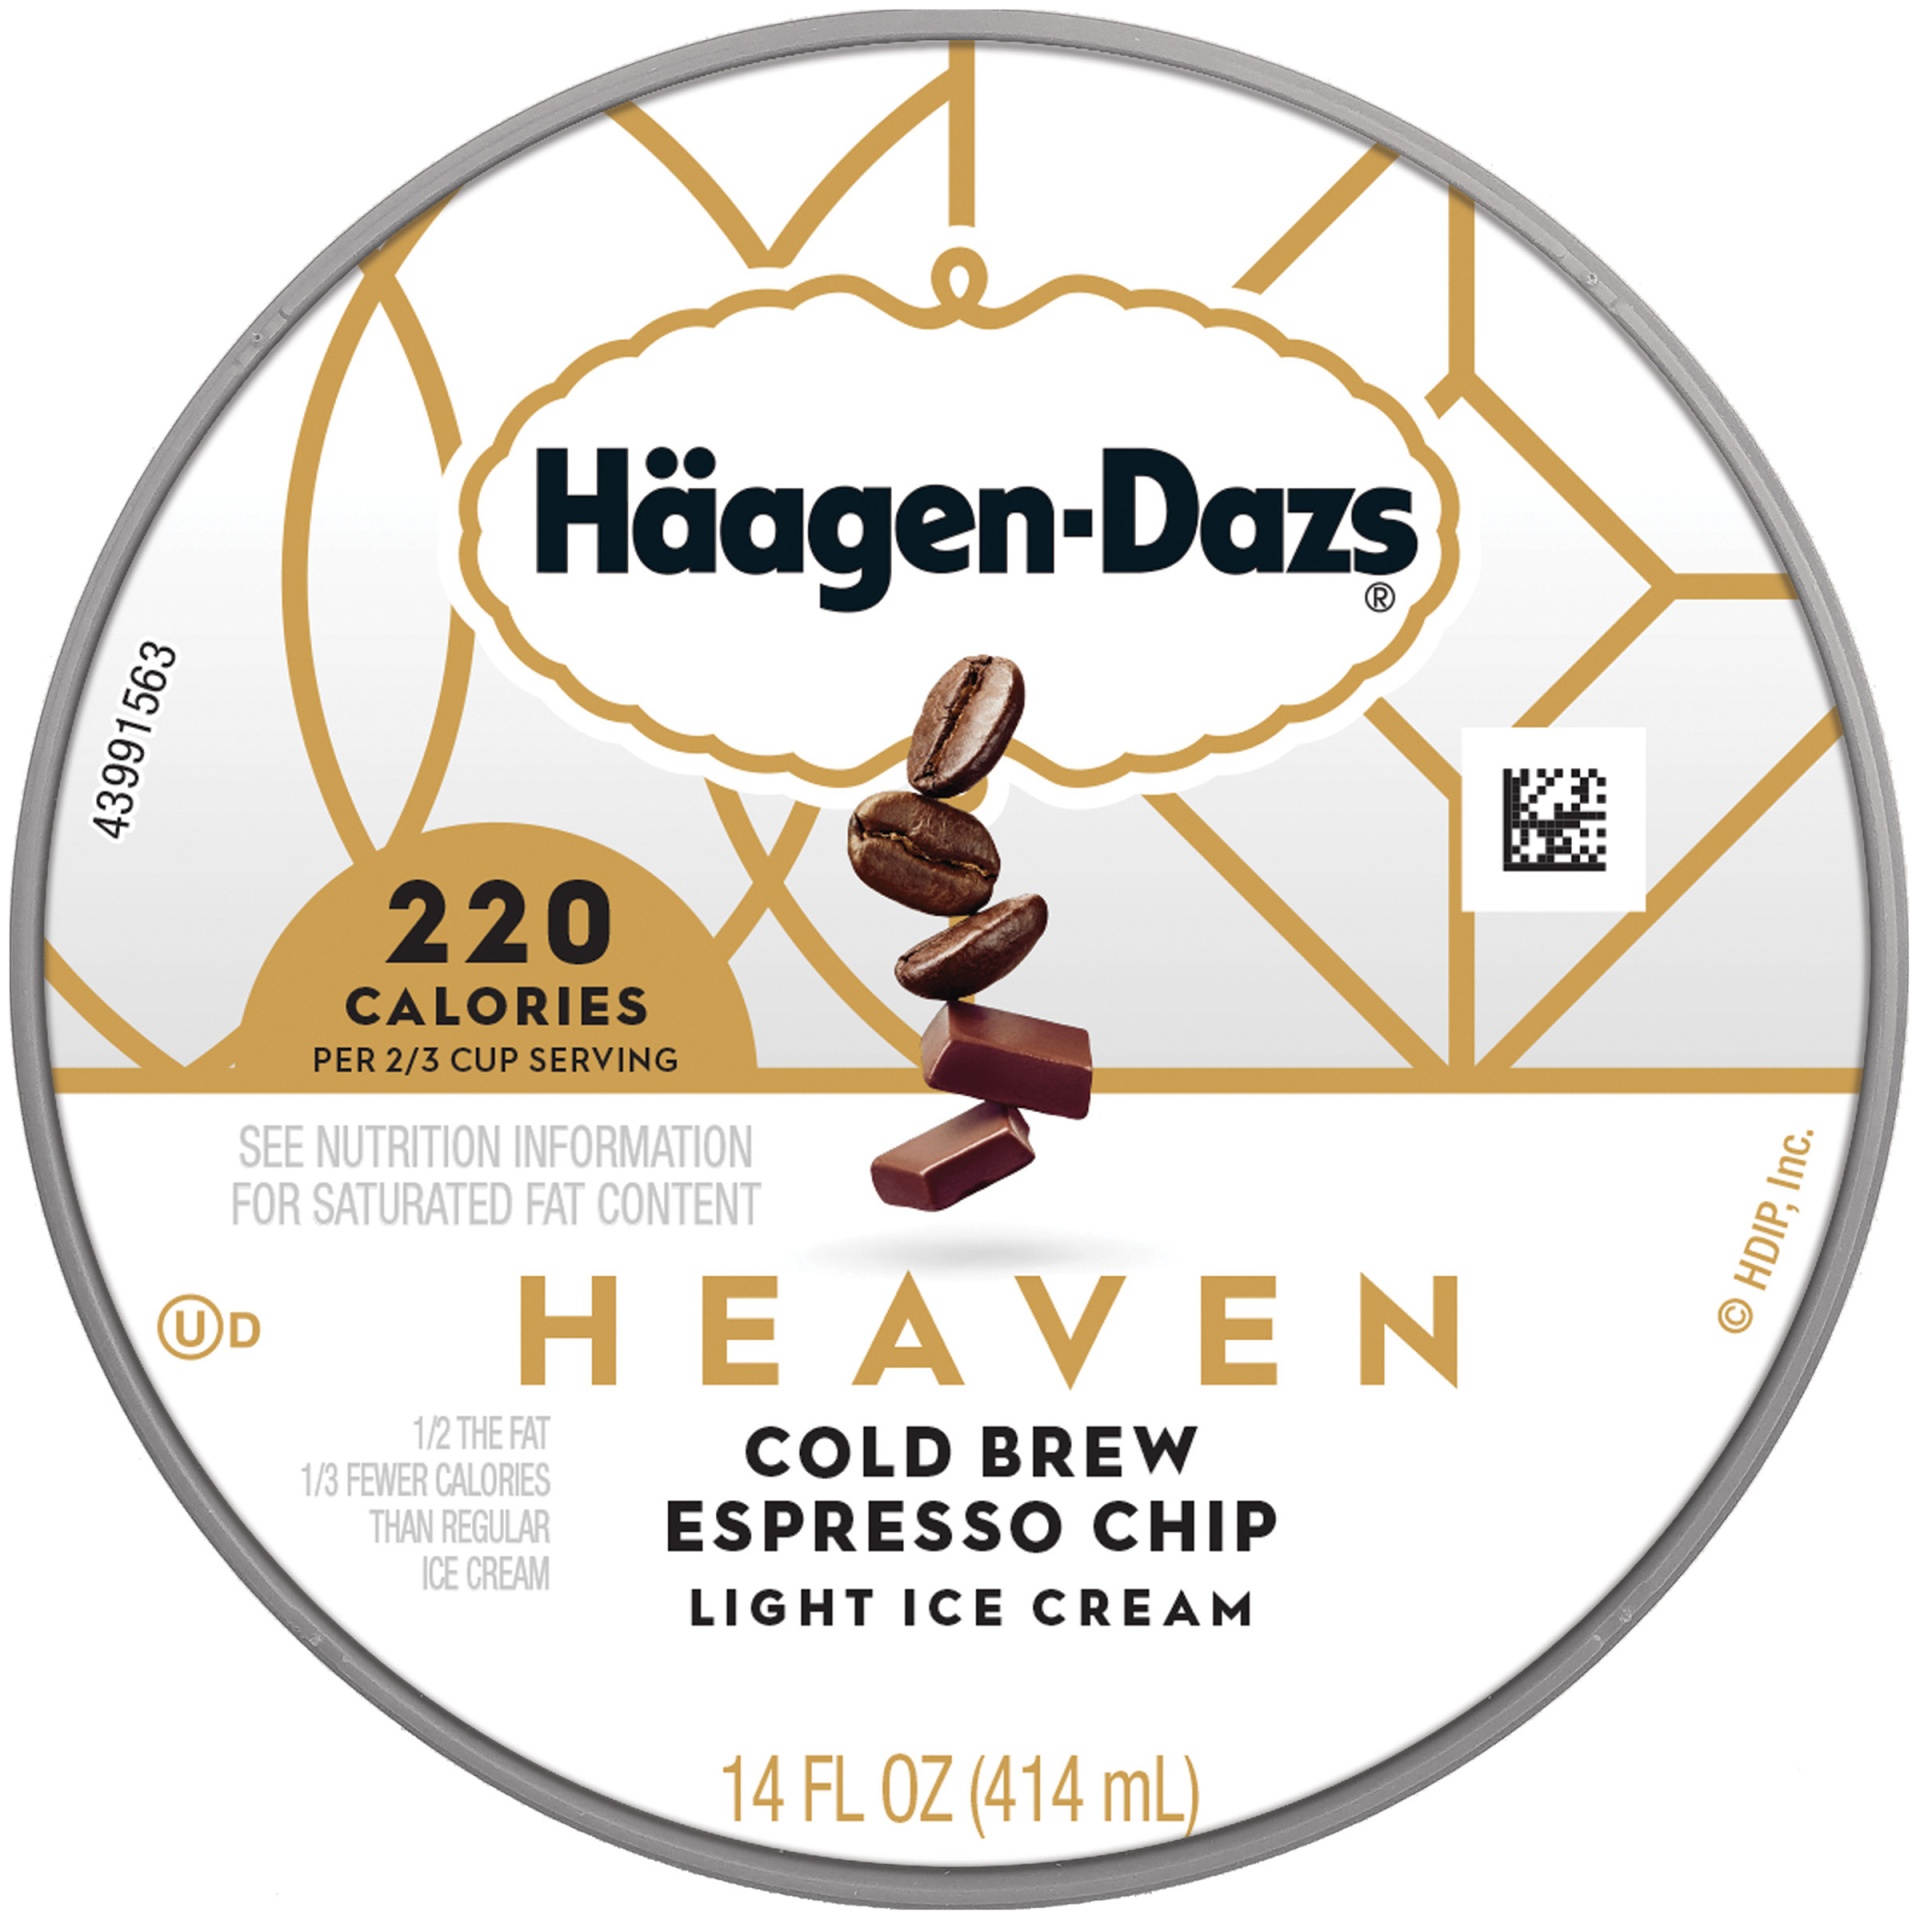 slide 7 of 7, Häagen-Dazs Heaven Cold Brew Espresso Chip Light Ice Cream, 14 fl oz